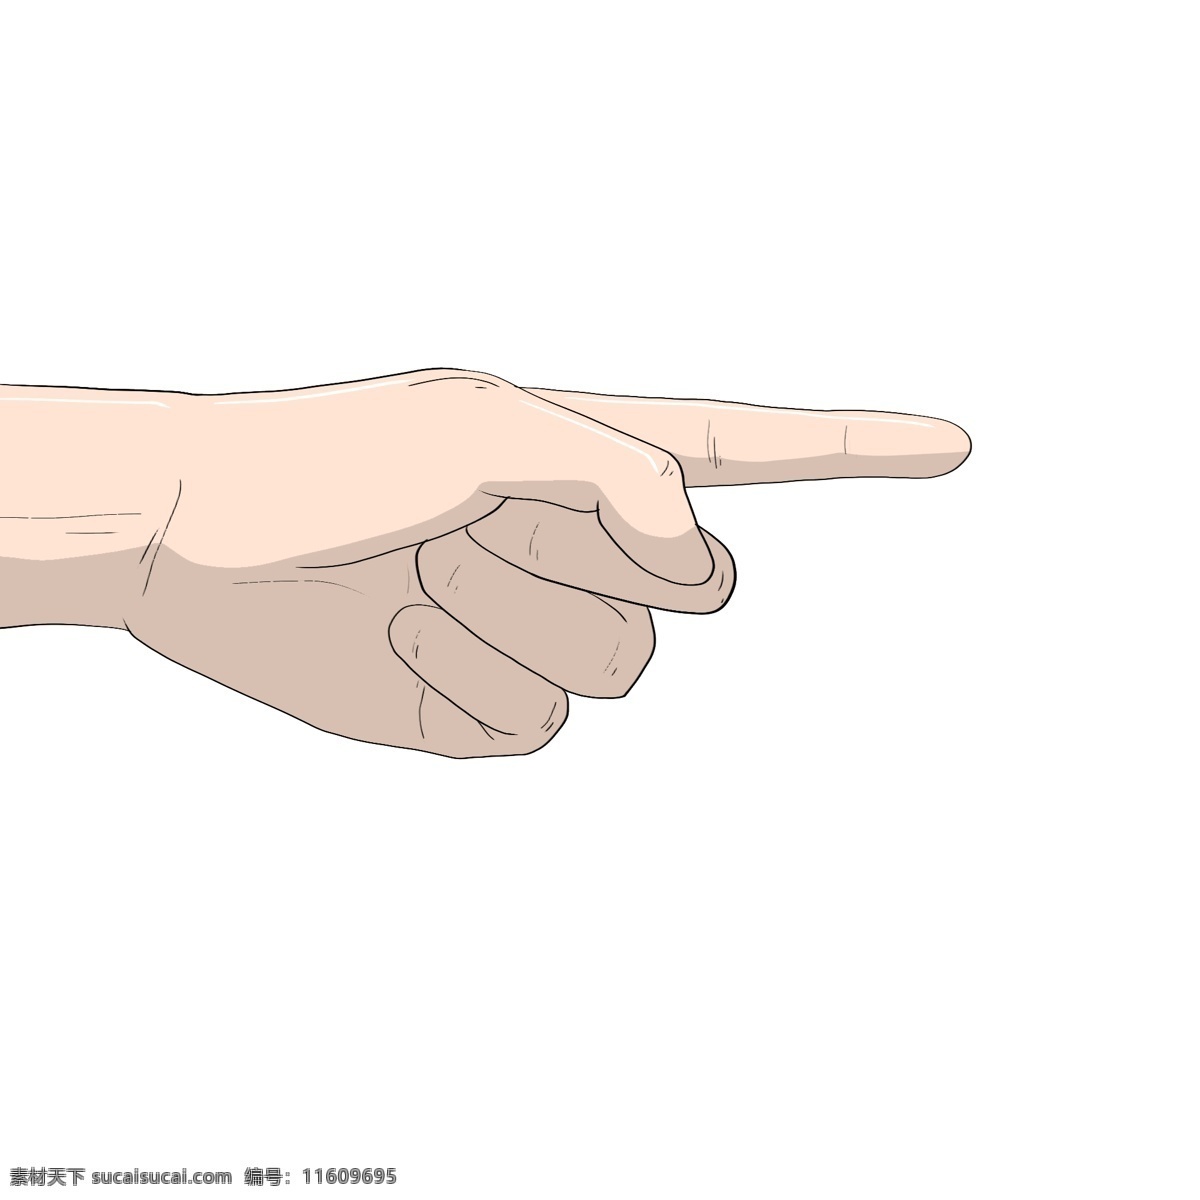 手绘 食指 手势 插画 手绘手势插画 创意的手势 漂亮的手势 精美指向手势 食指的手势 指向手势 食指指向